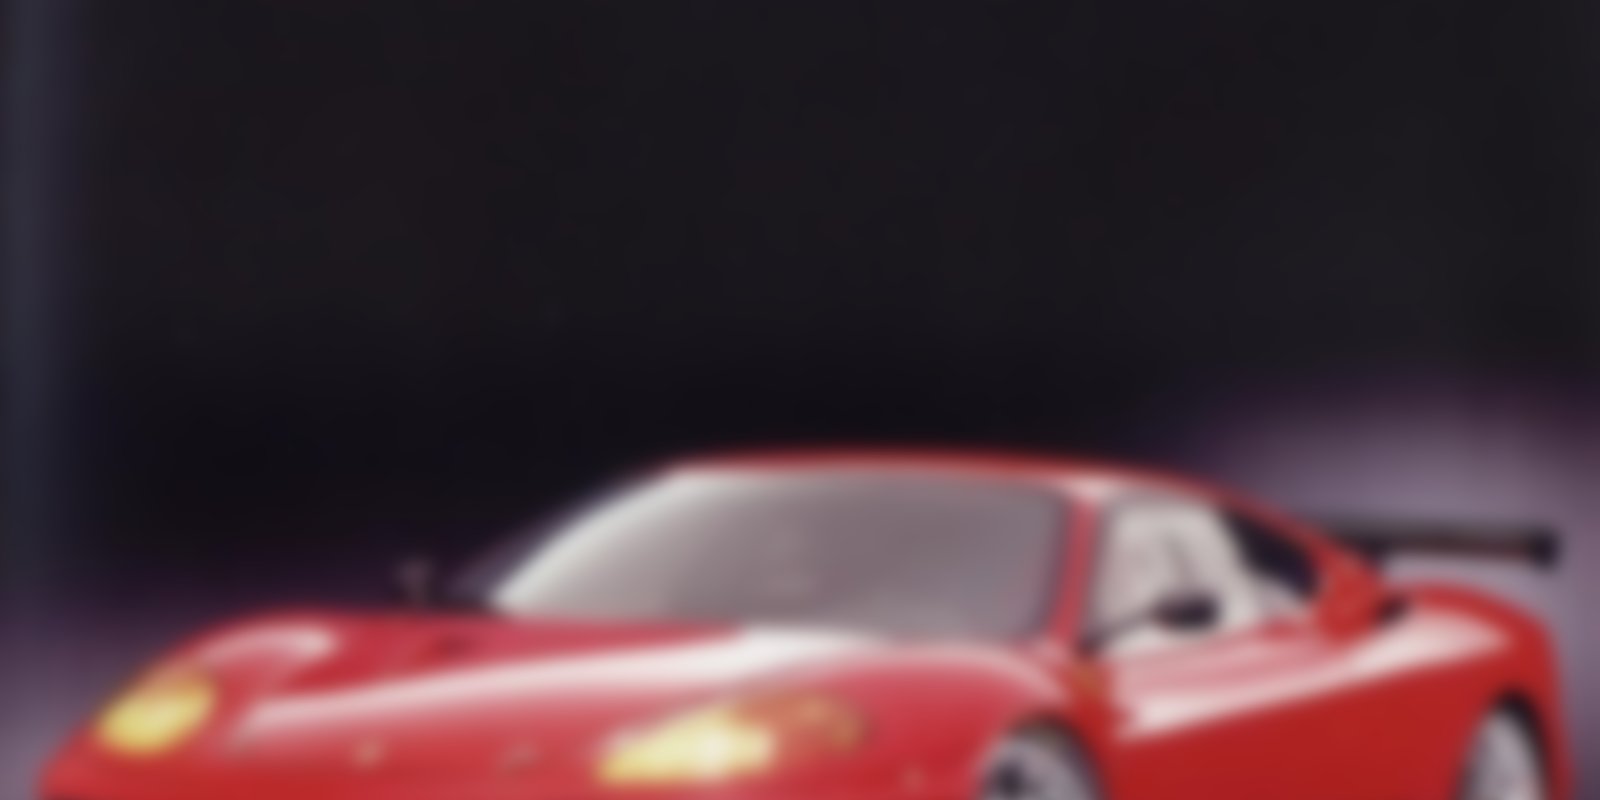 Faszination Auto 16 - Ferrari